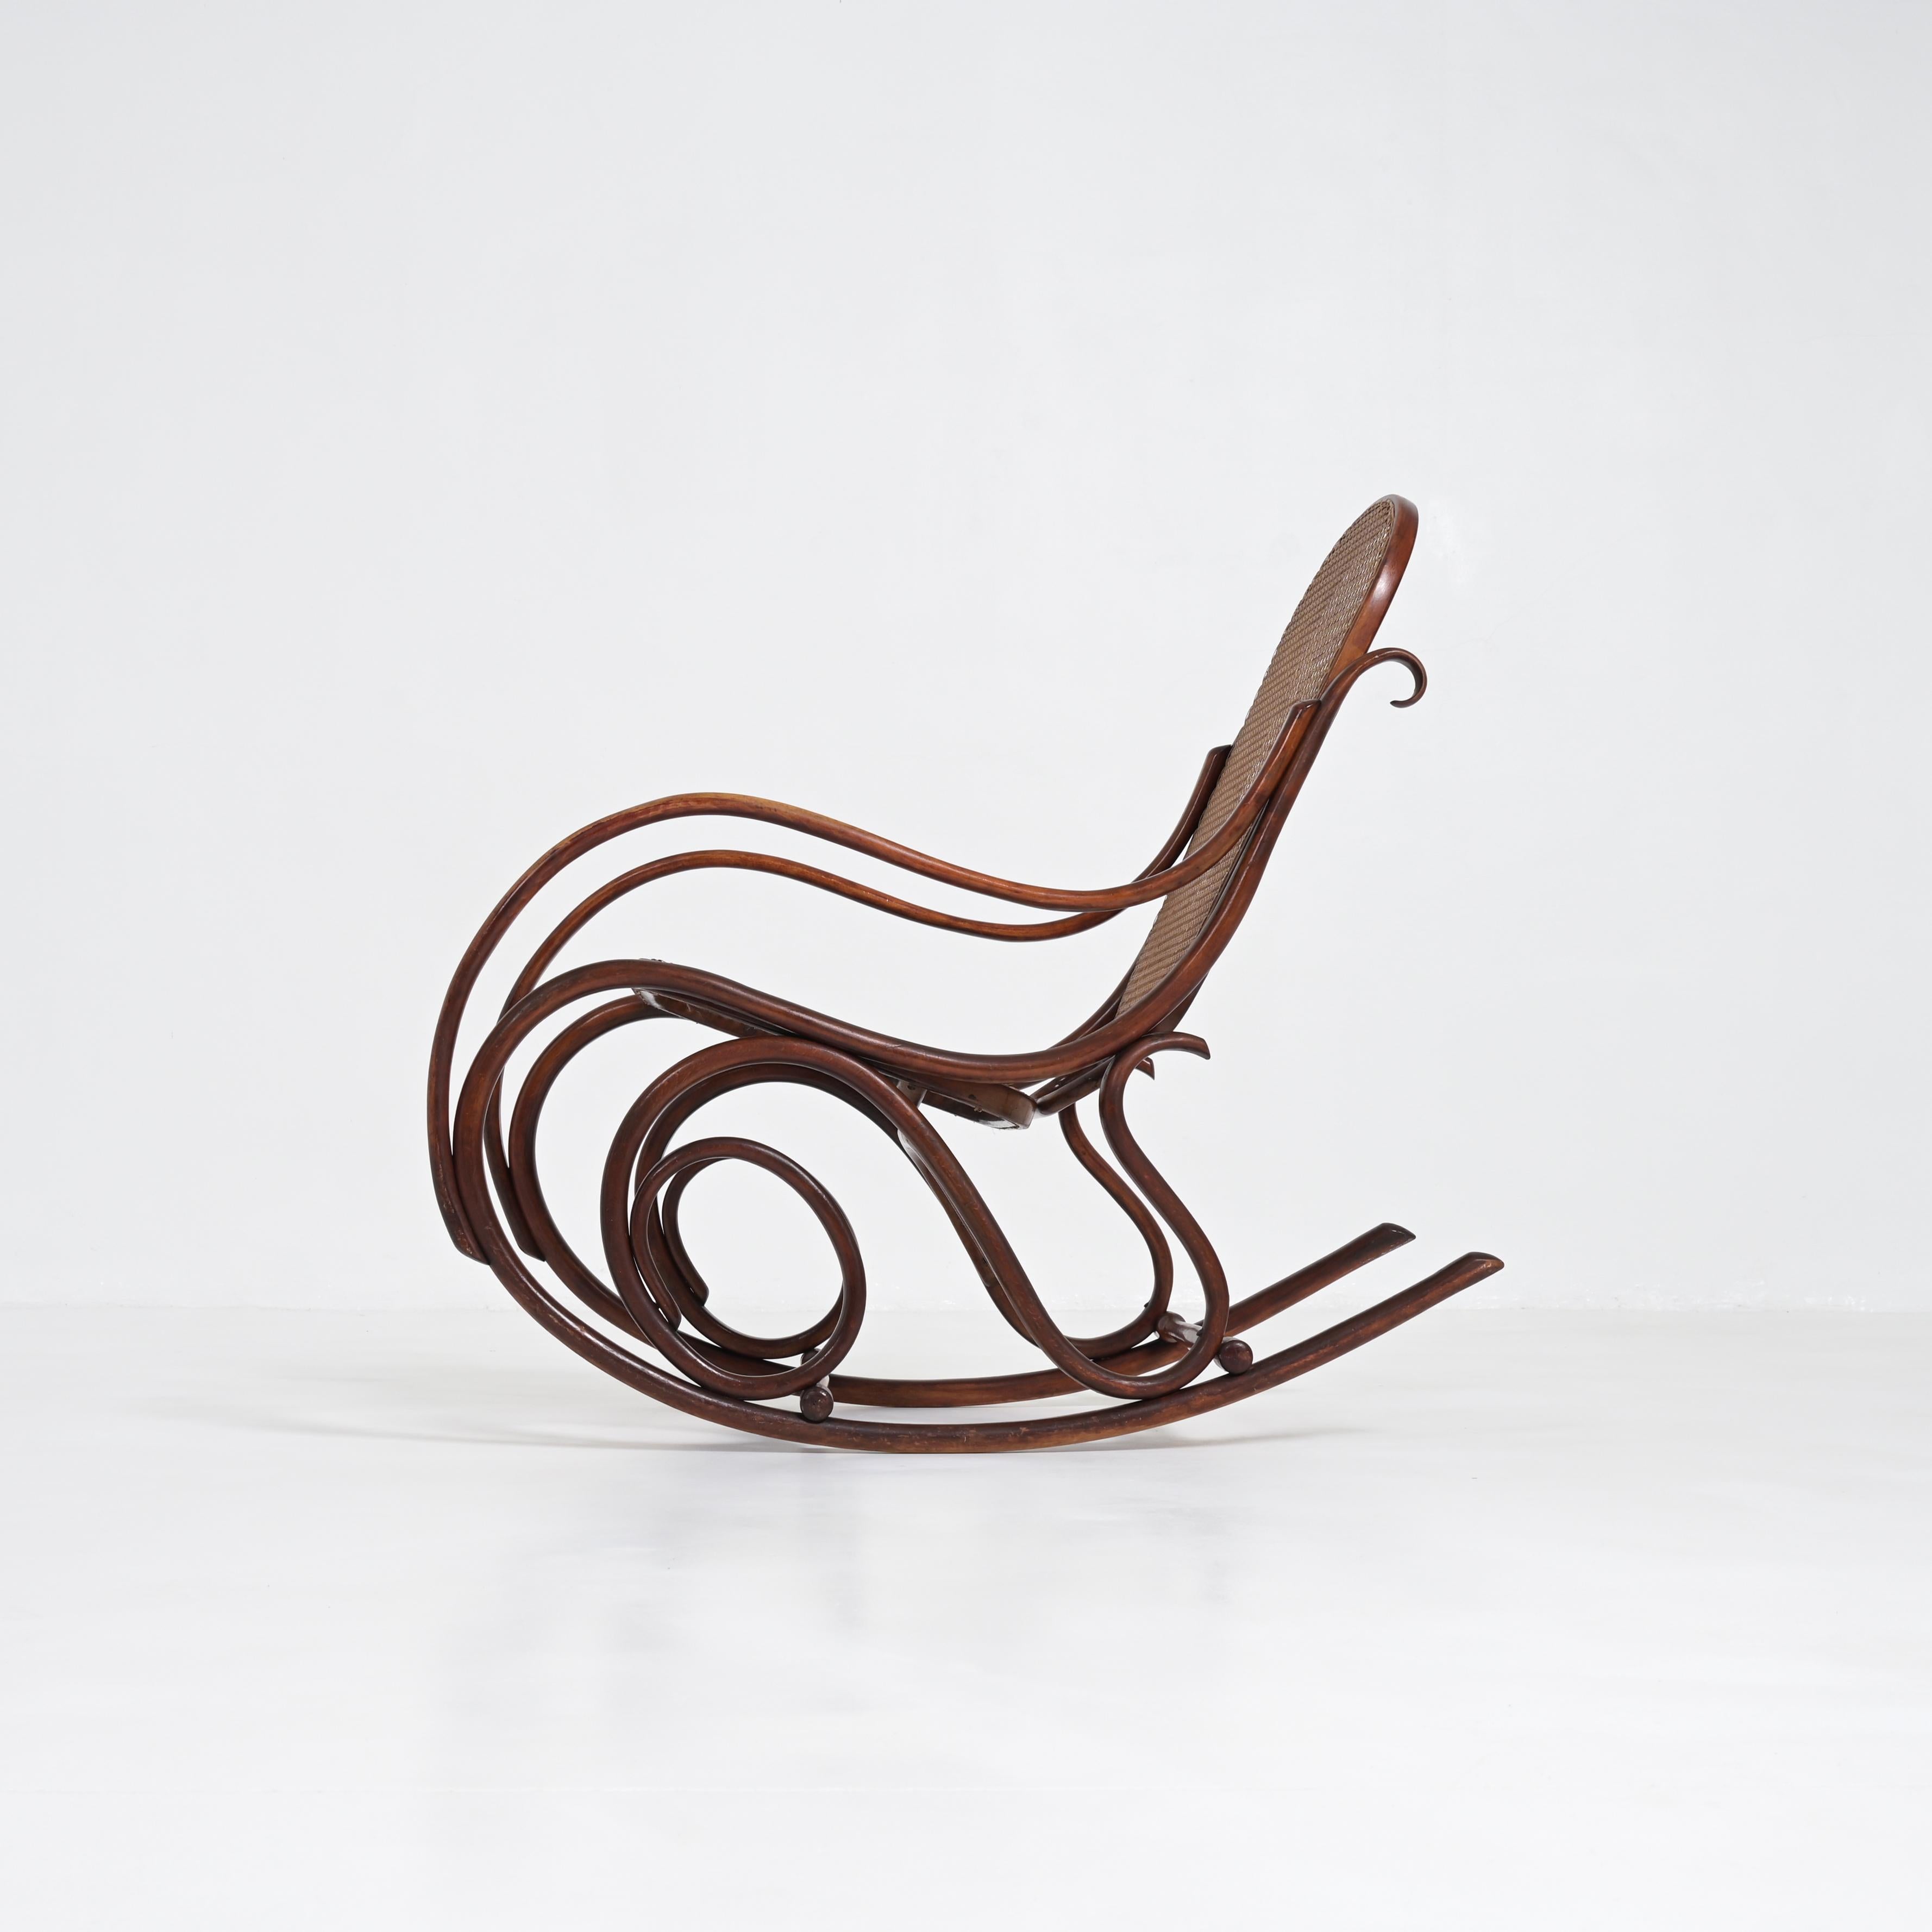 Ce vieux fauteuil à bascule authentique a été conçu par Michael Thonet et fabriqué par Thonet. Il figurait dans le catalogue de 1904. C'est un classique du design.
Ce fauteuil à bascule marron est en très bon état vintage avec des signes normaux